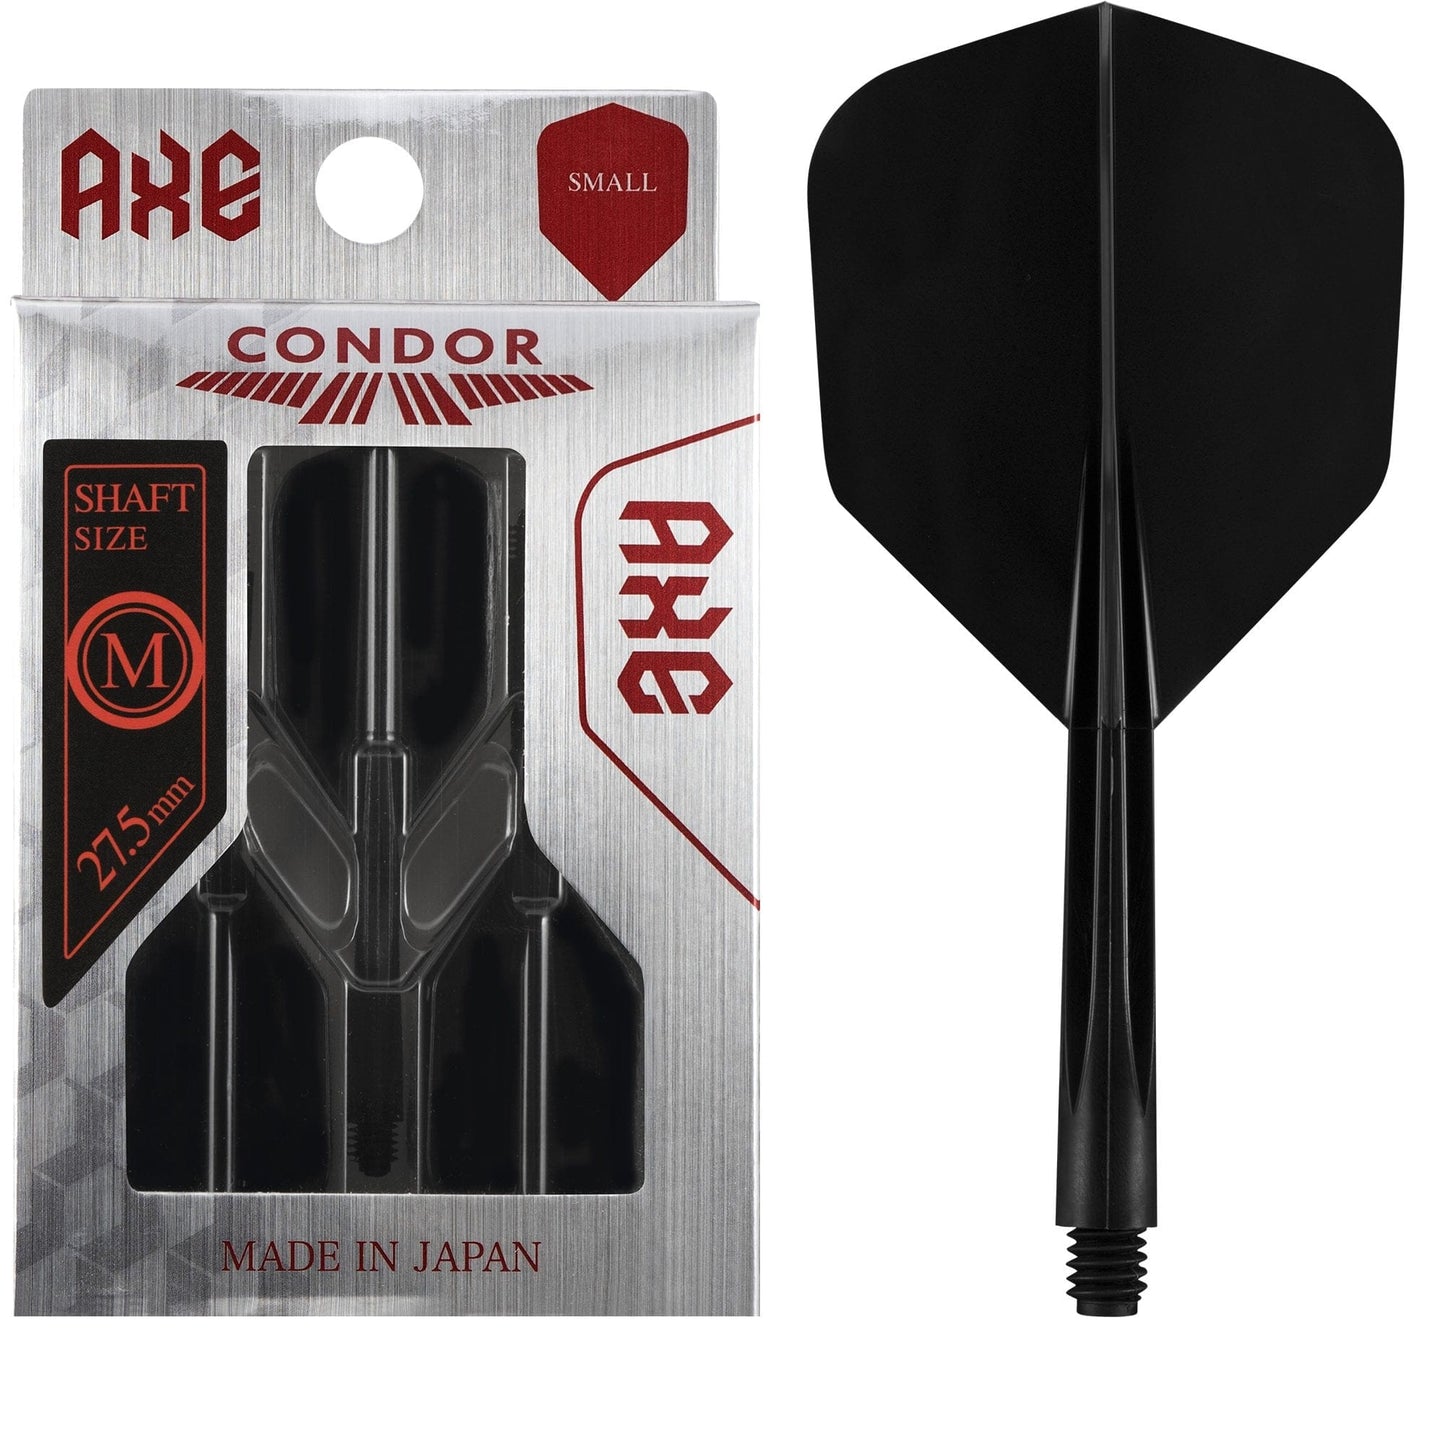 Condor AXE Dart Flights - Small - Black Medium